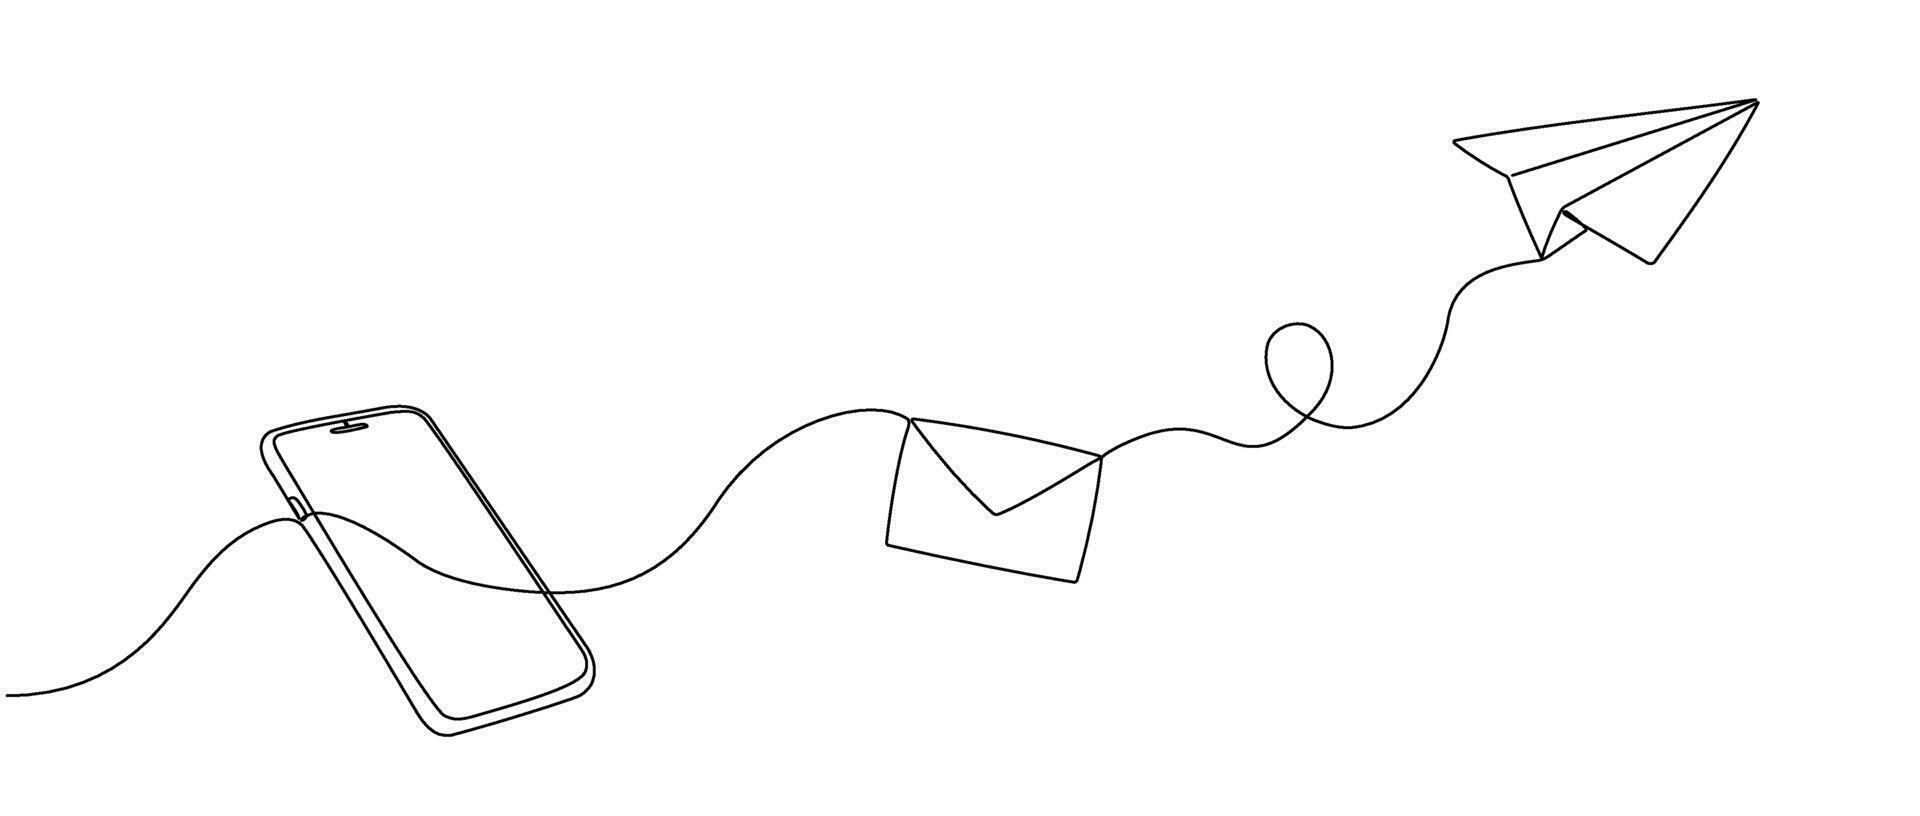 continu Célibataire ligne modifiable dessin de un enveloppe en volant en dehors et une papier avion de une téléphone intelligent. concept de mobile bavarder messages, dans Facile griffonnage style. vecteur illustration.